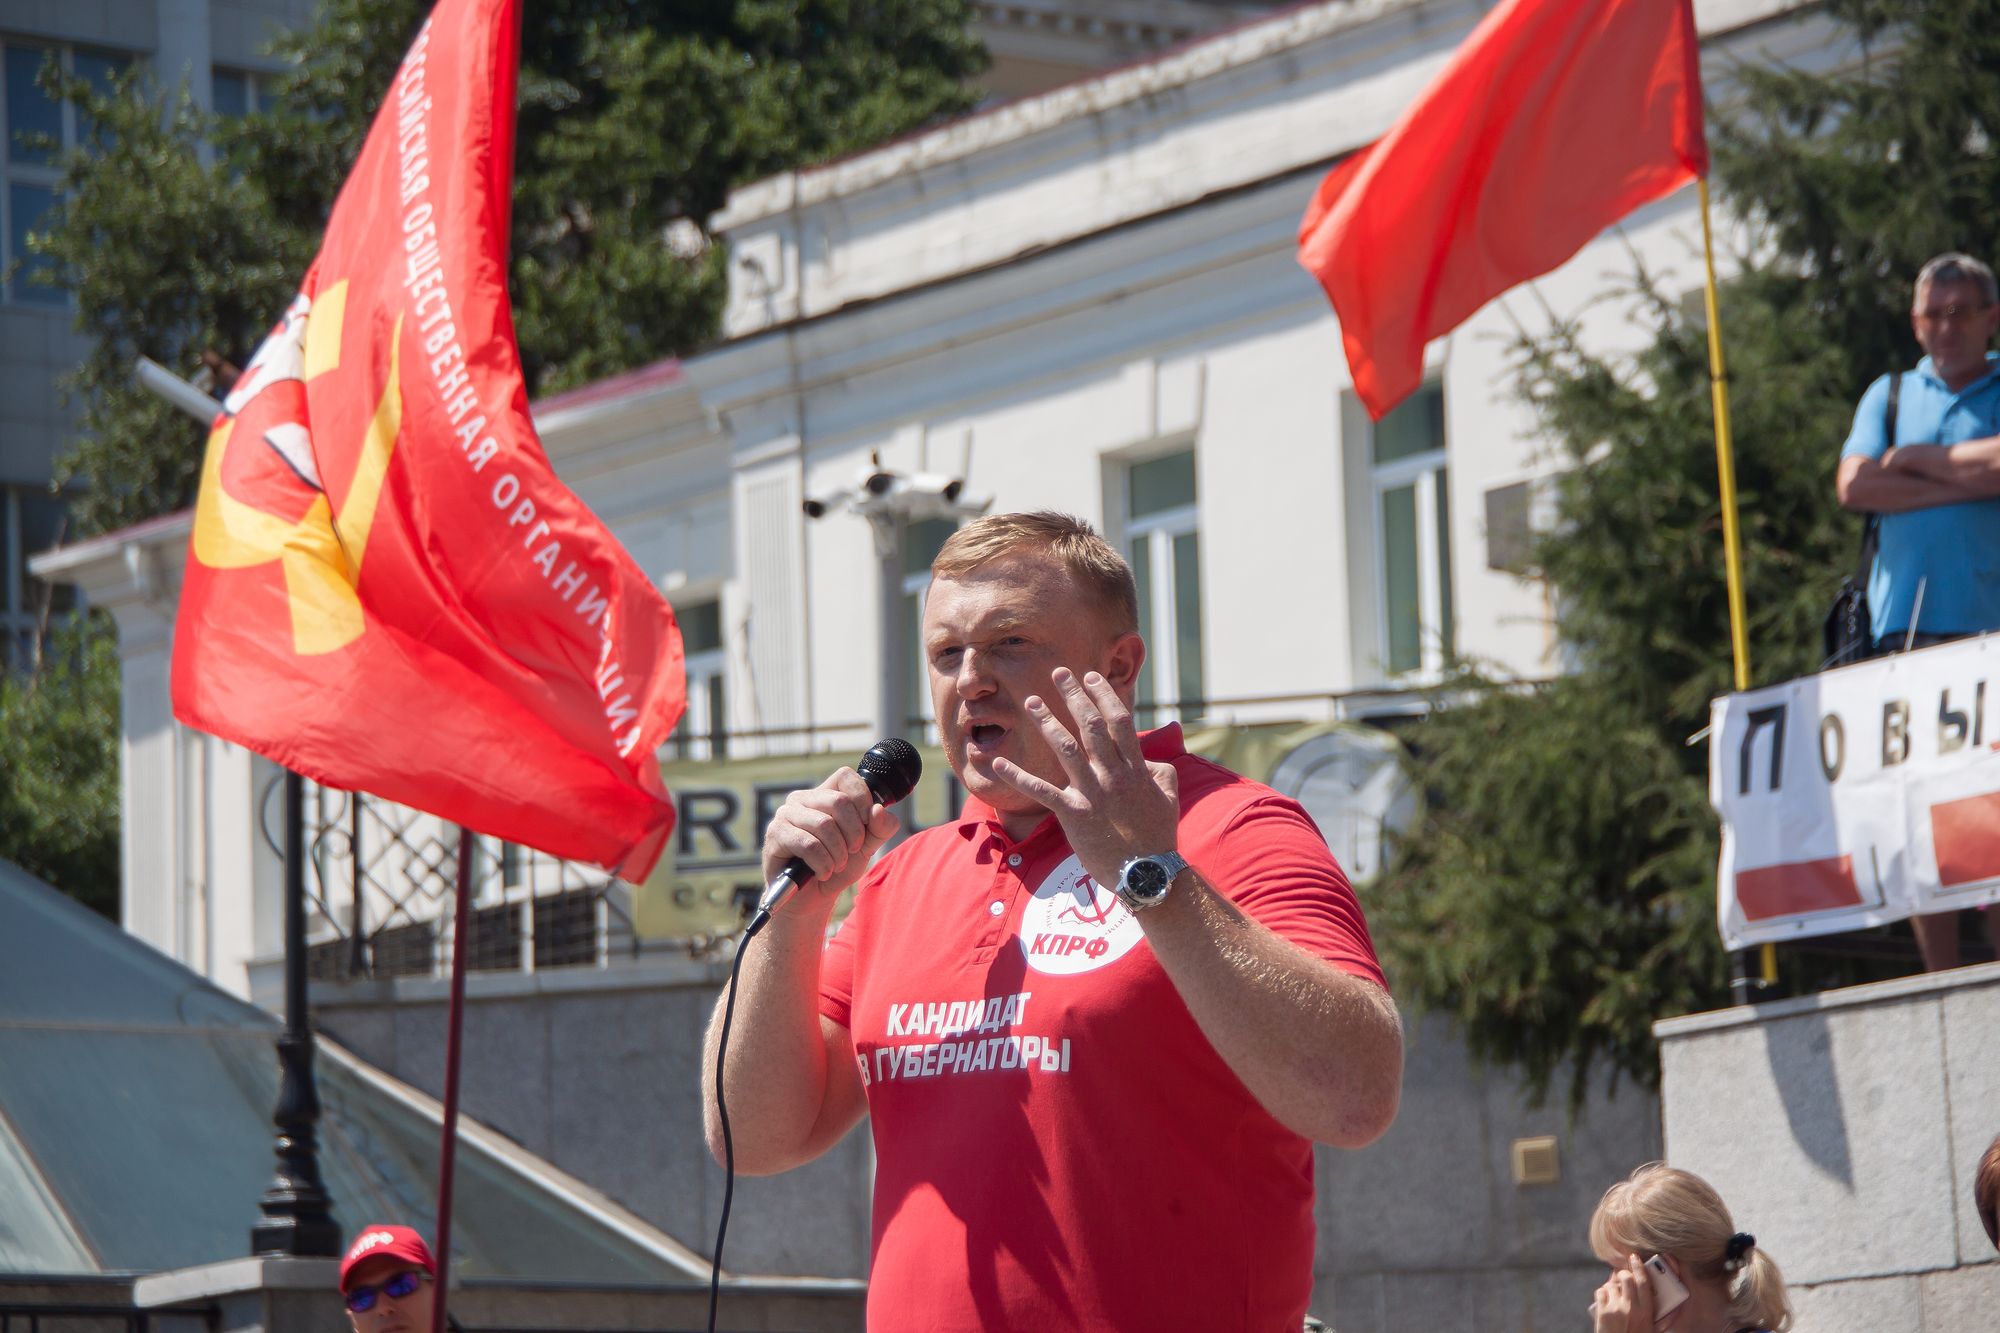 Les fraudes massives empêchent l'élection d'un gouverneur communiste en Primorye